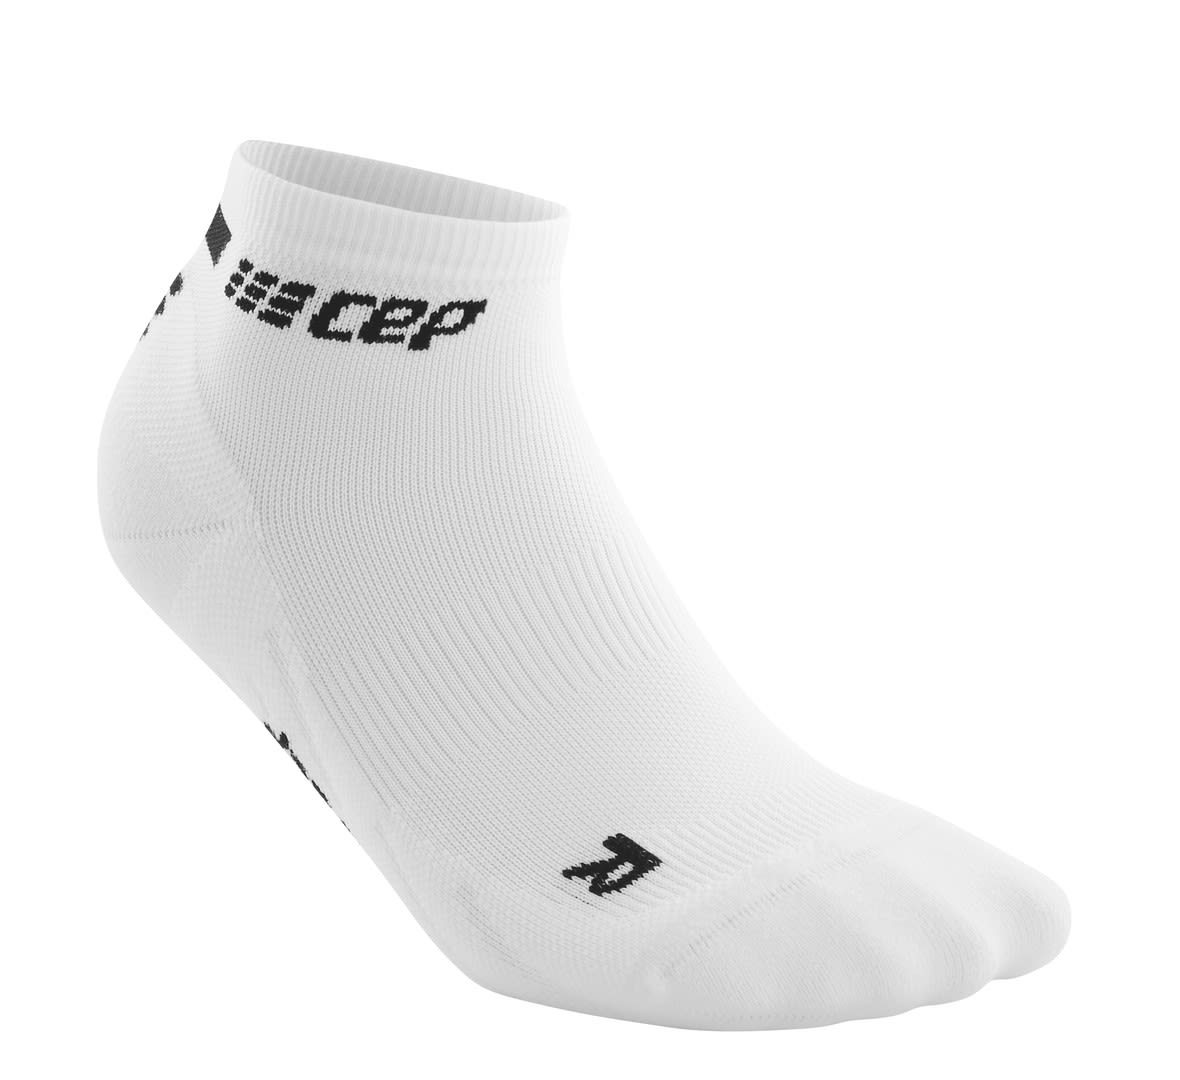 Cep W The Run Compression Socks Low Cut Weiß | Größe II | Damen Kompressionss